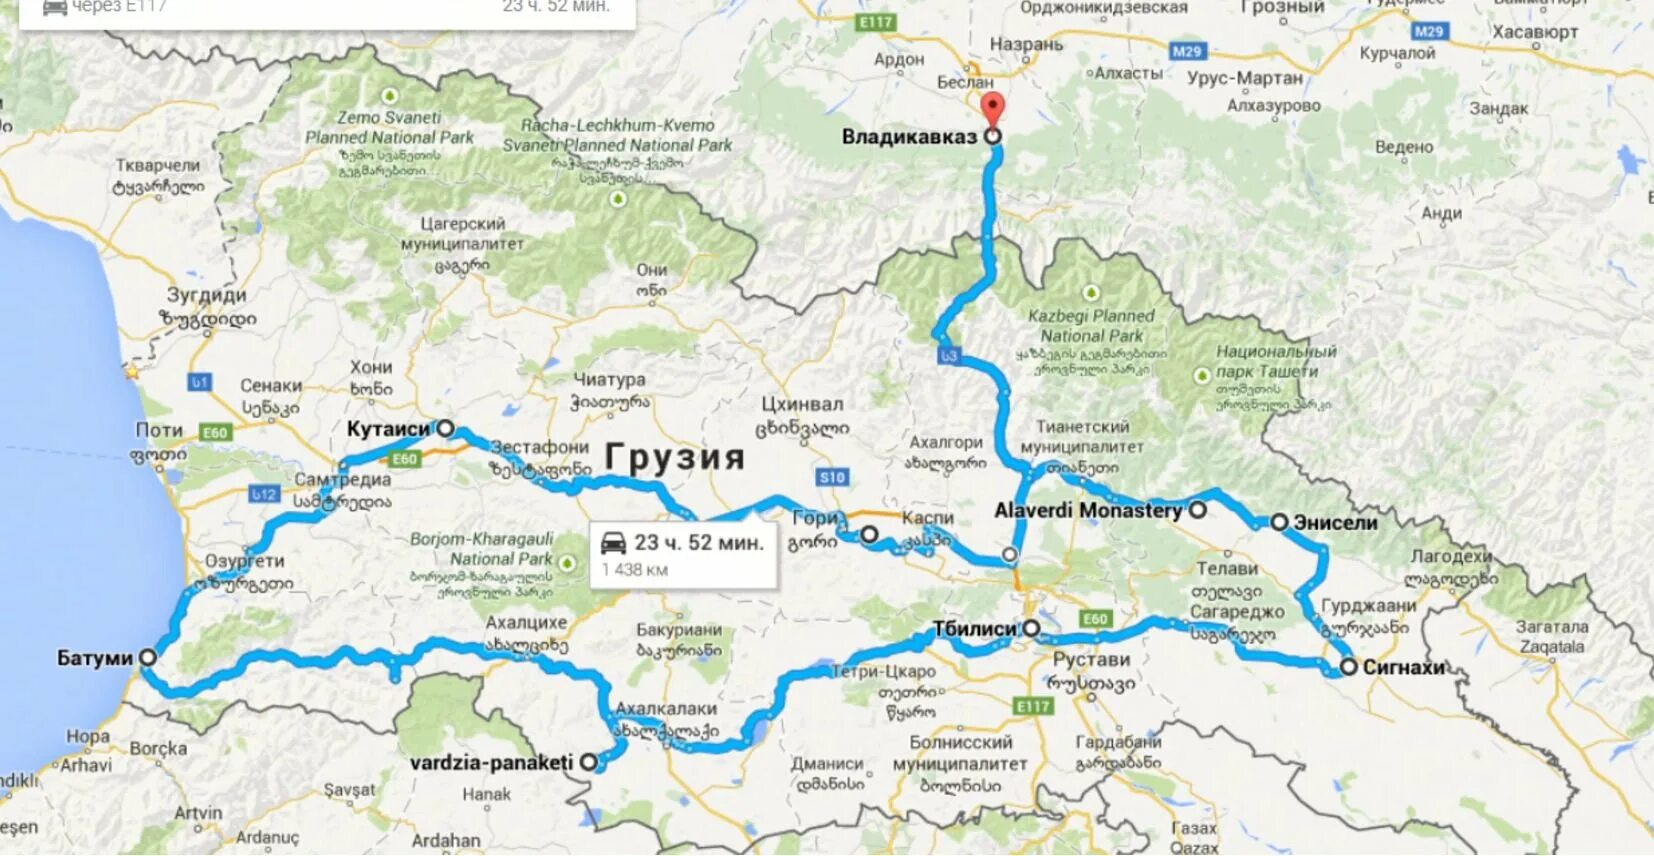 Сколько до батуми на машине. Грузия на карте. Карта автомобильных дорог Грузии. Дорога до Грузии на машине. Карта автодорог Грузии.